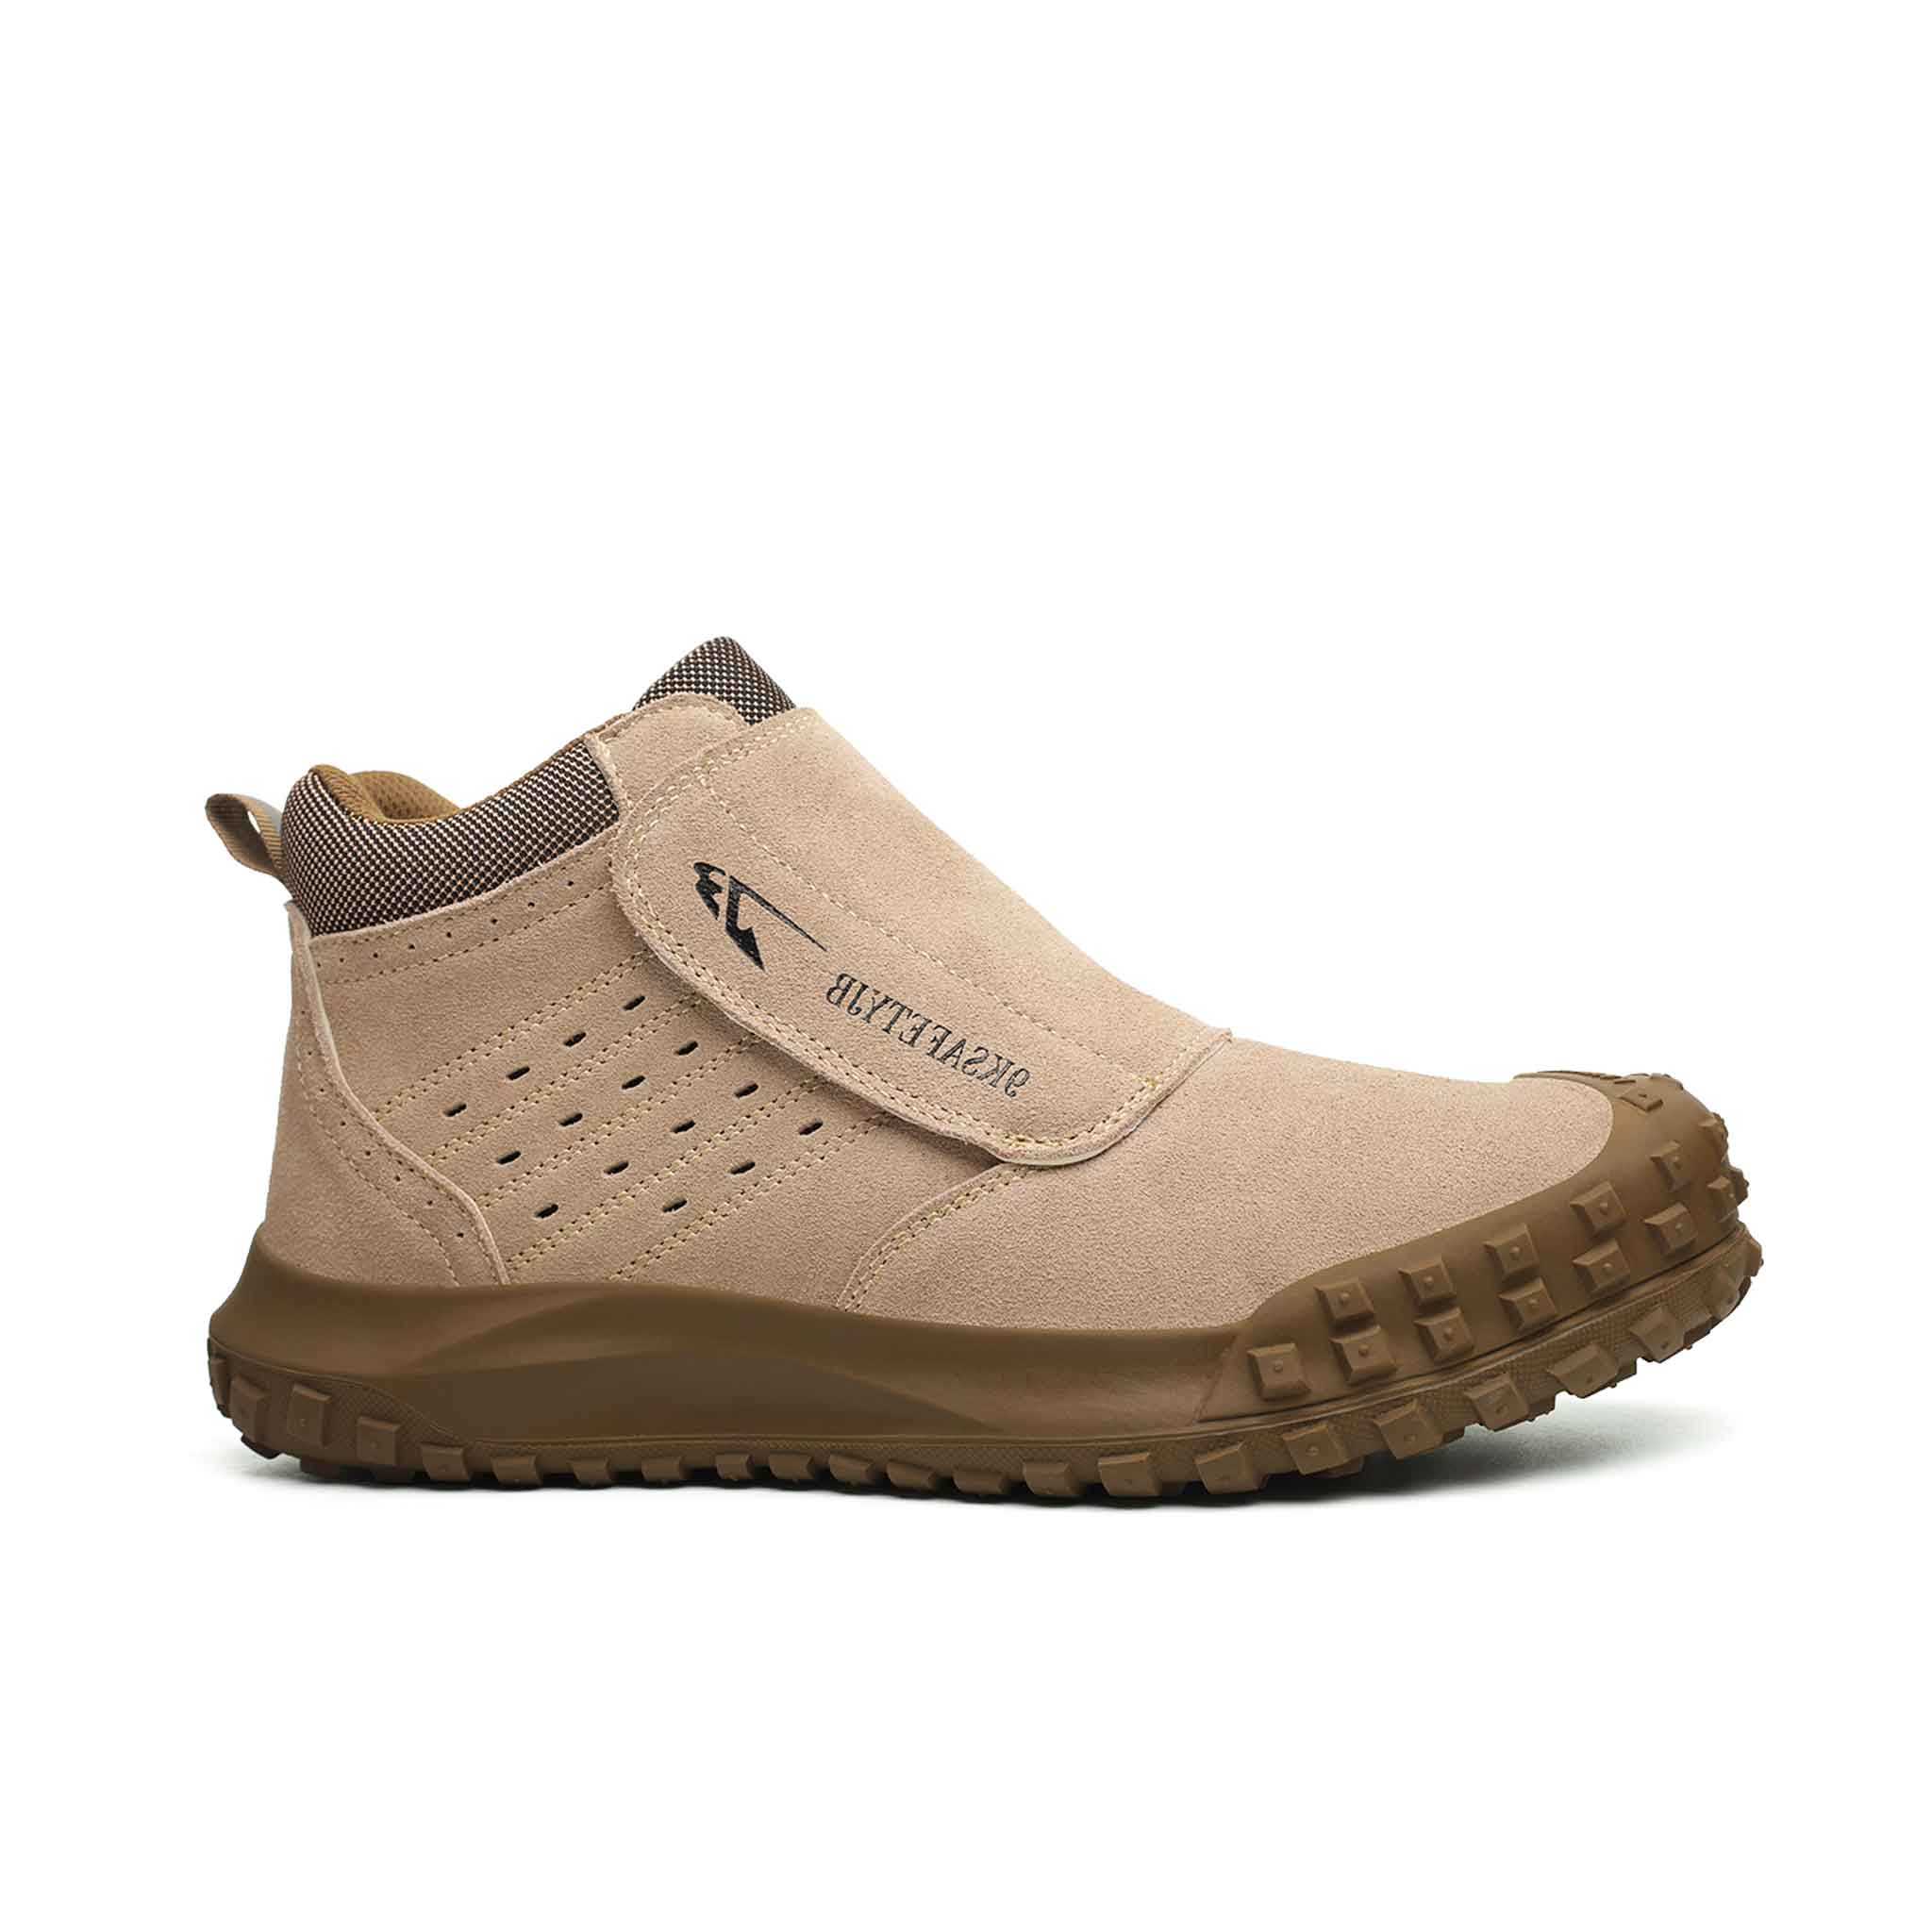 Women's Steel Toe Welding Boots - Slip Resistant | B251